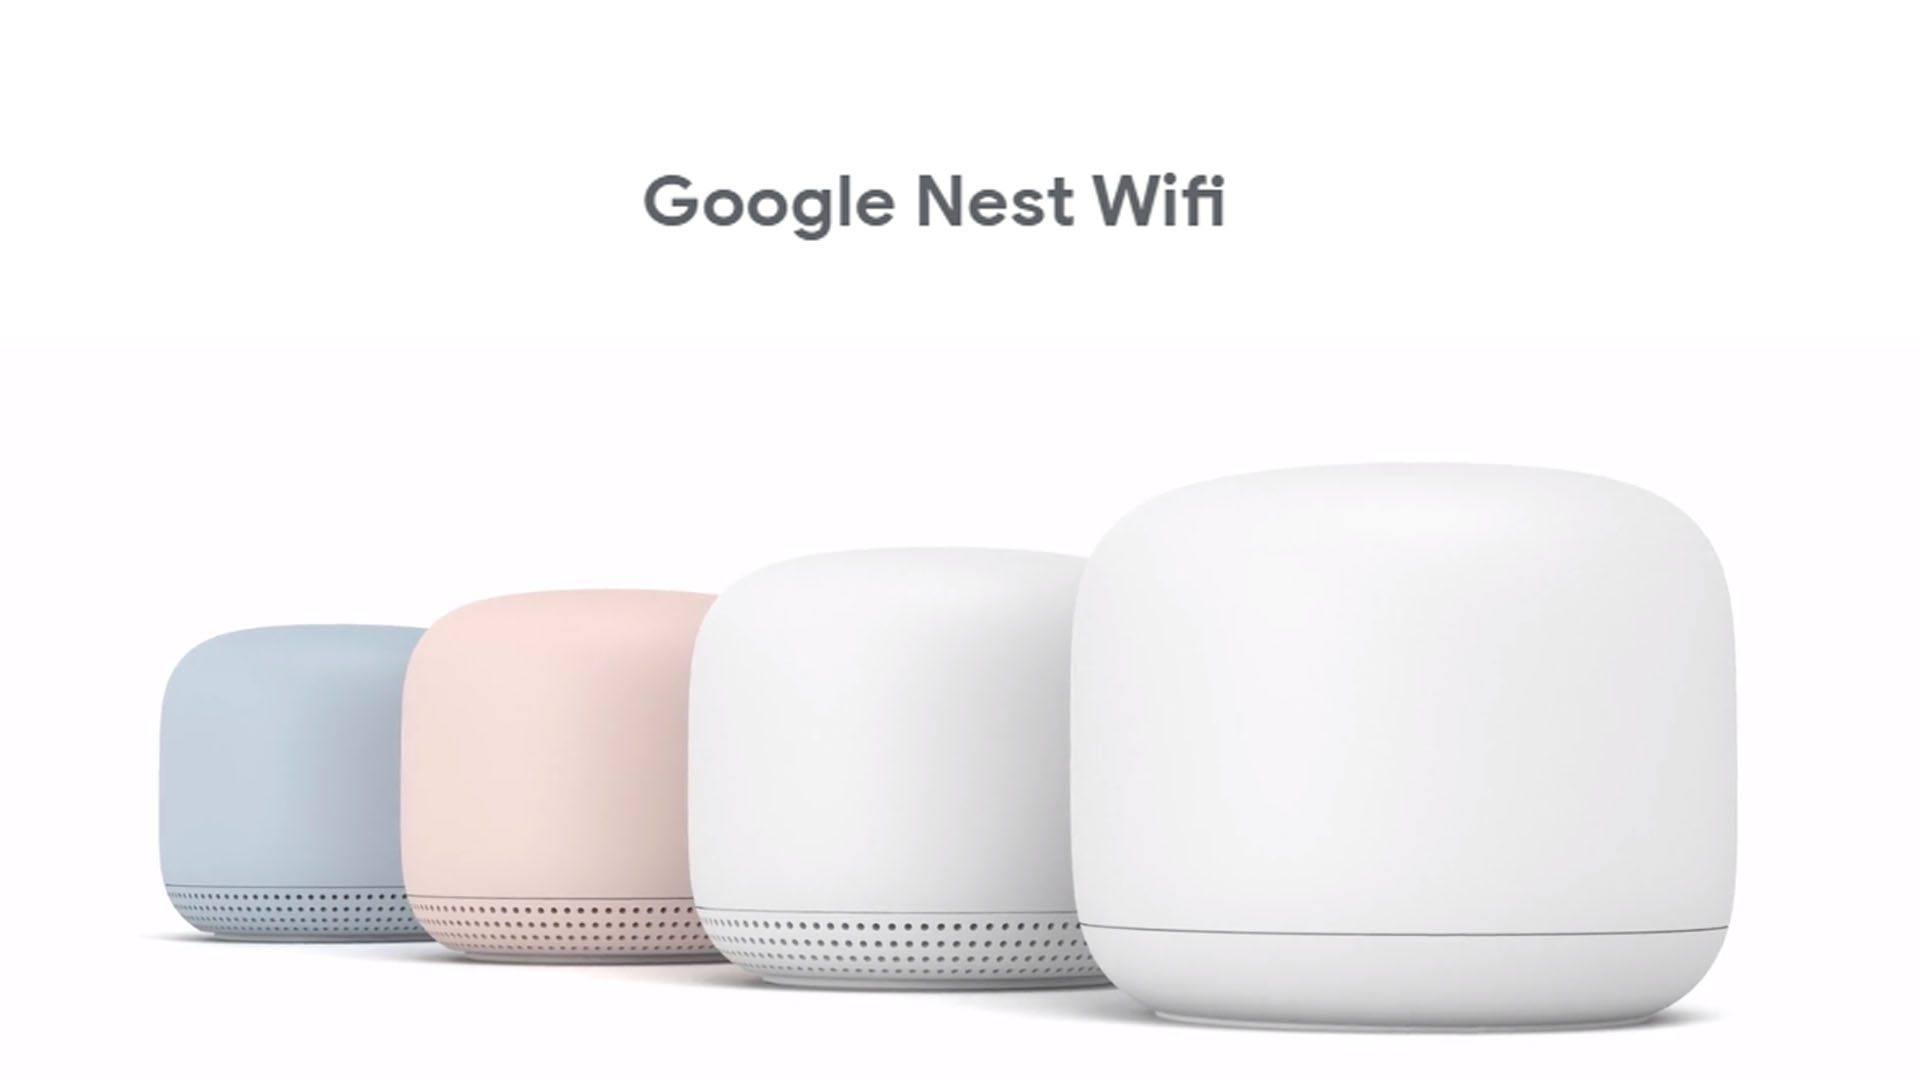 Google Nest WiFi Adalah Penghala Yang Turut Berfungsi Seakan Nest Mini